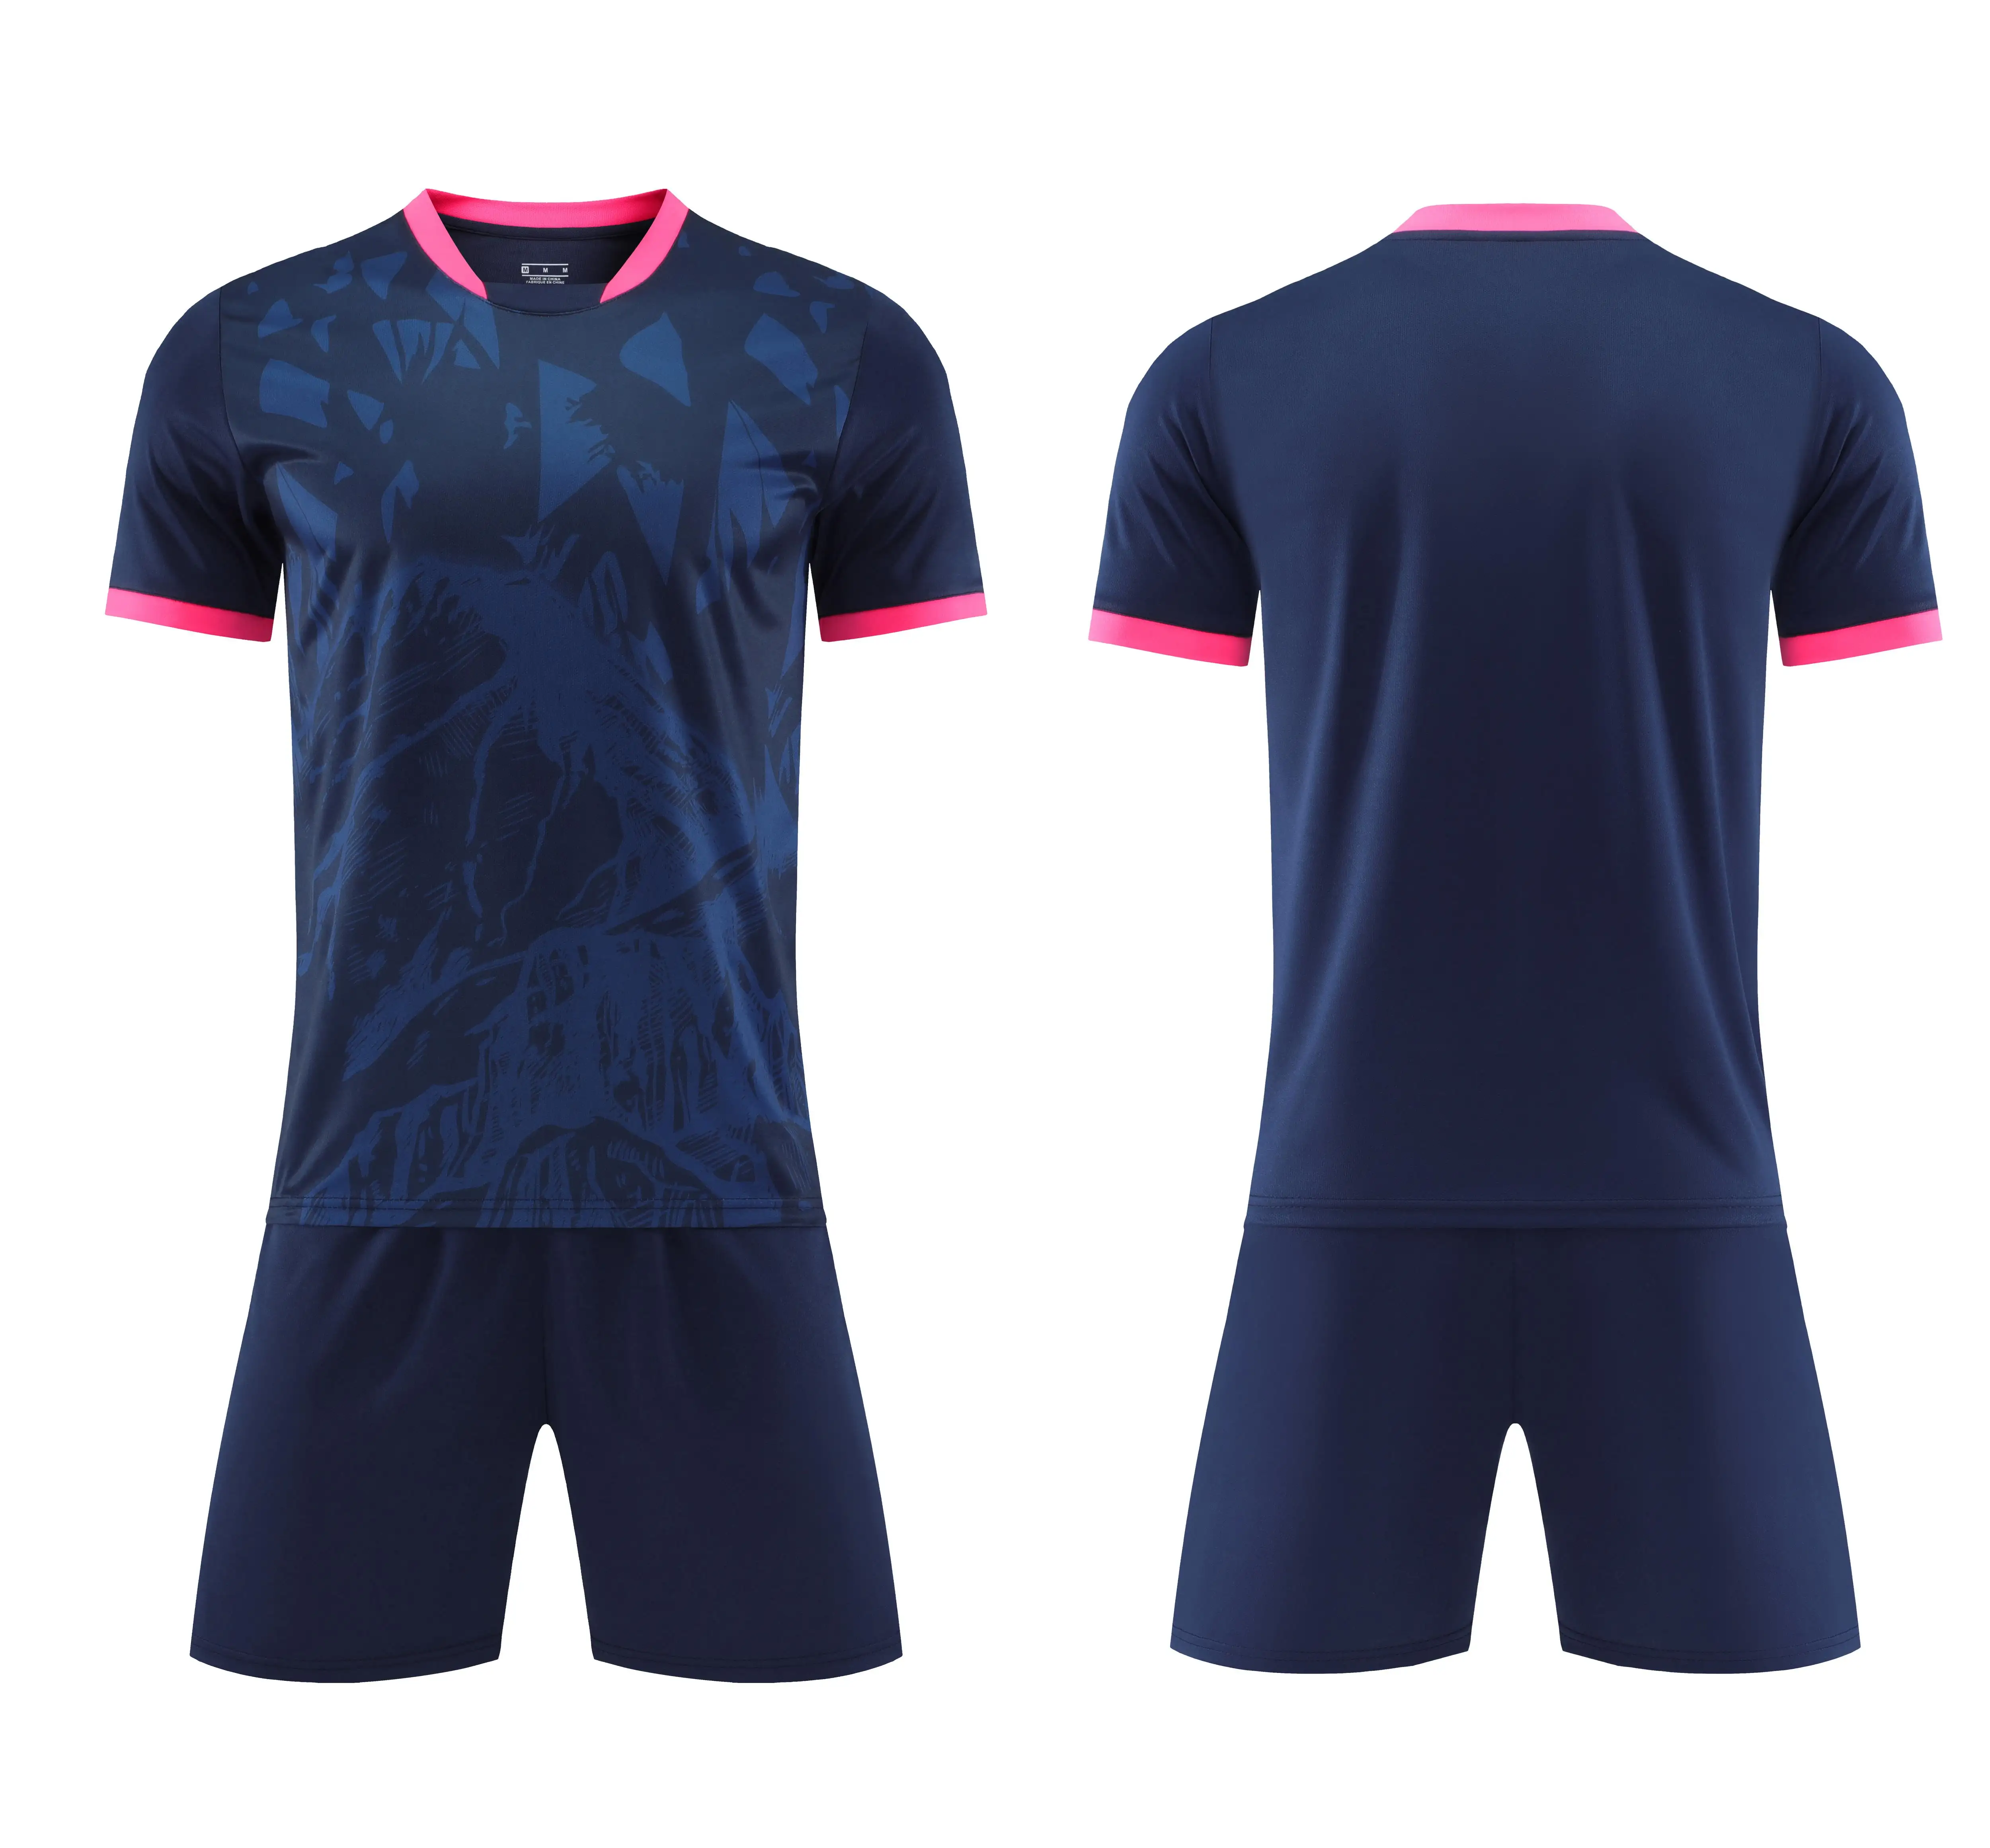 Design personalizzato stampa sublimata Soccer Club Team Uniform New Design Football Jersey Shirt personalizzazione Design uniforme da calcio